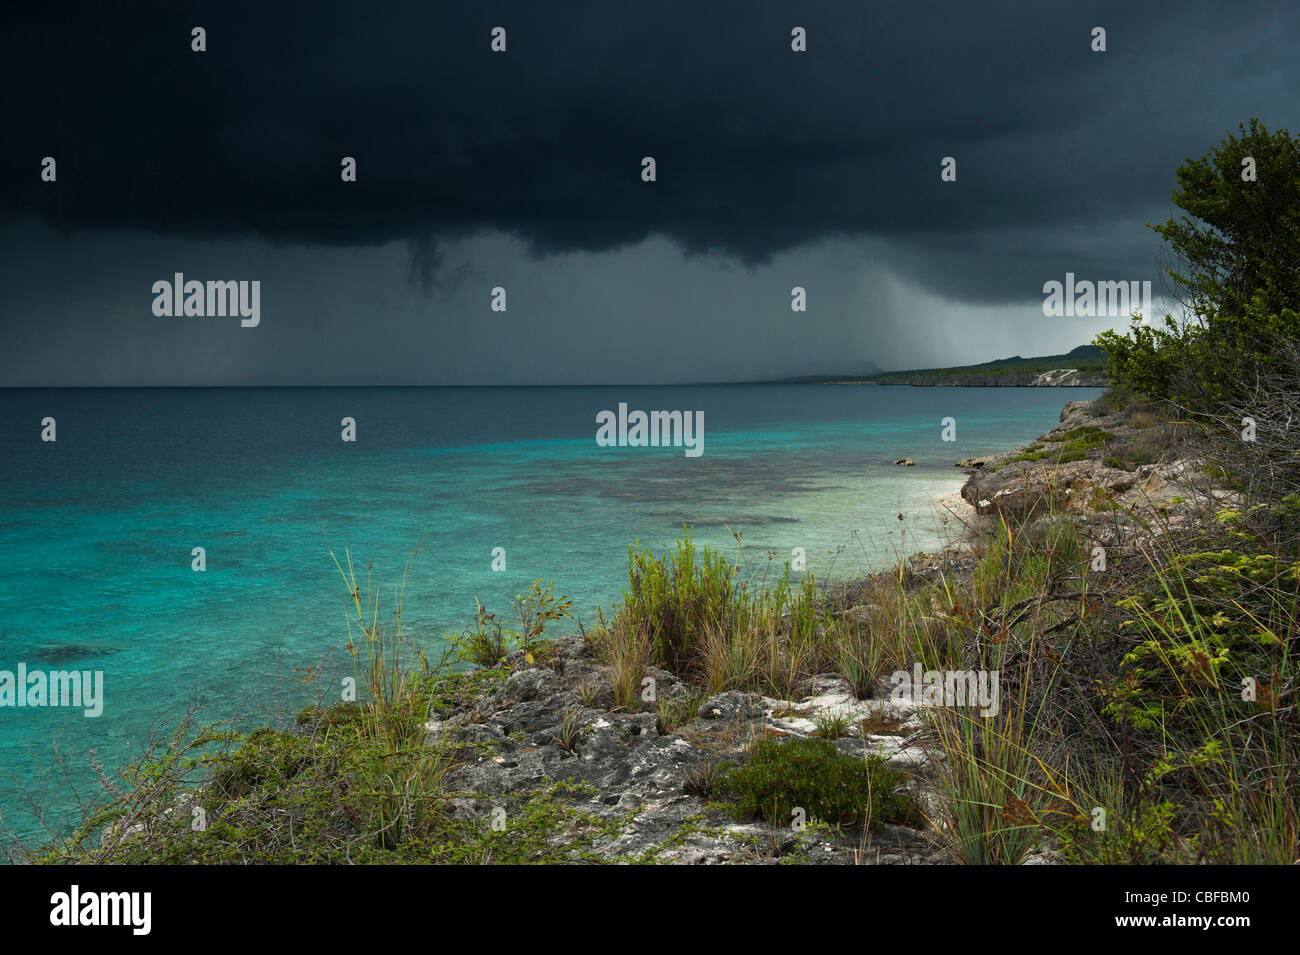 Tormenta sobre el océano, al oeste de Bonaire, Antillas Neerlandesas, Caribe Foto de stock